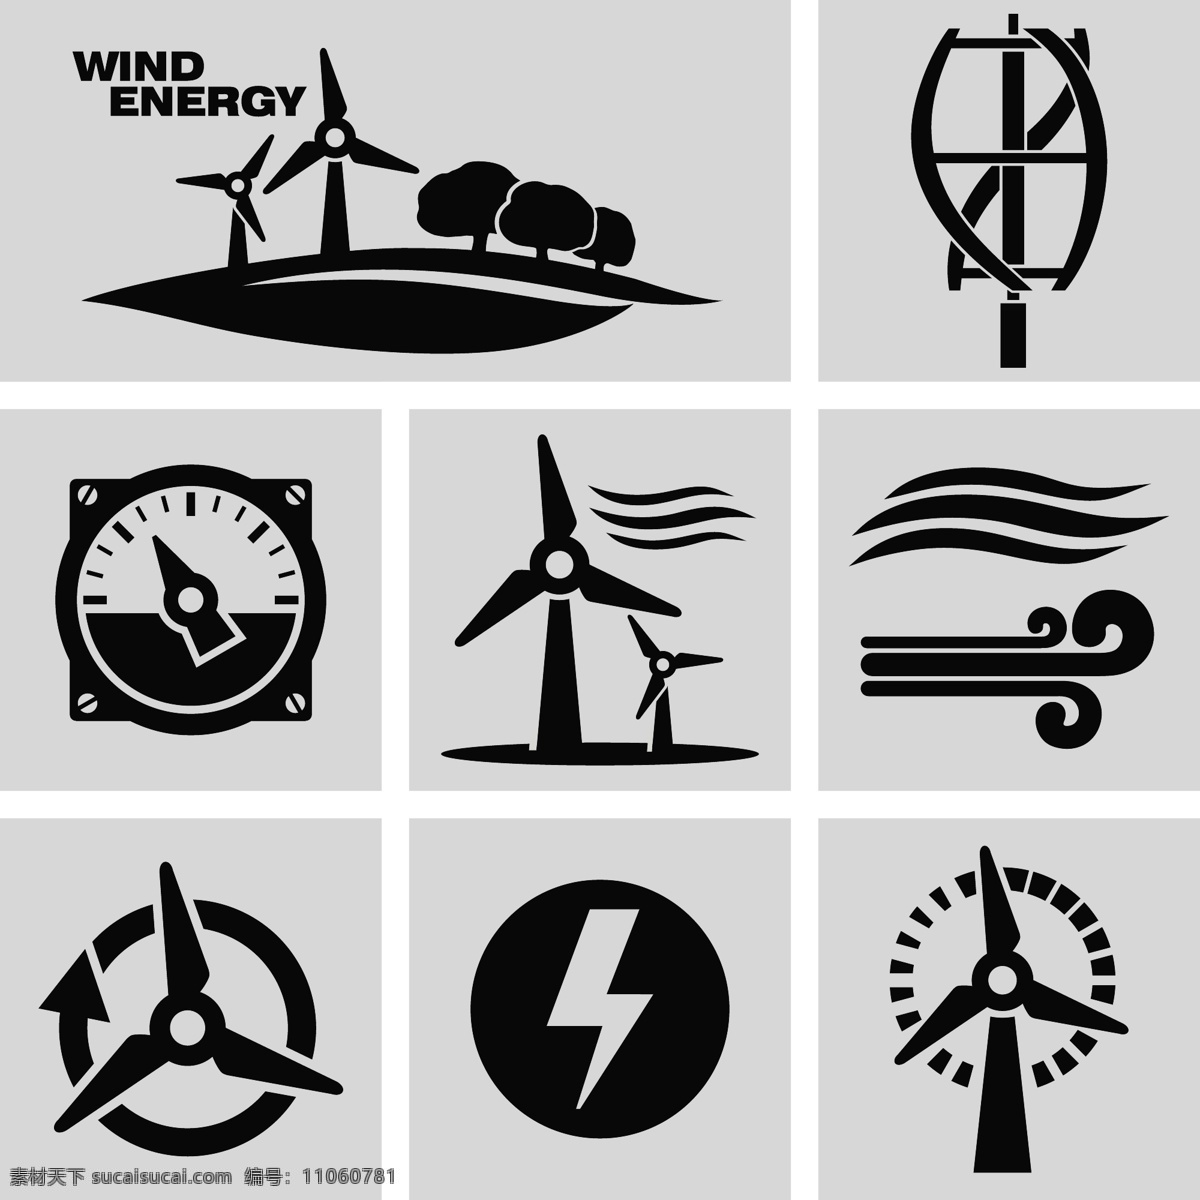 风力发电图标 风力发电 清洁能源 环保 工业 图标 标志图标 矢量素材 白色